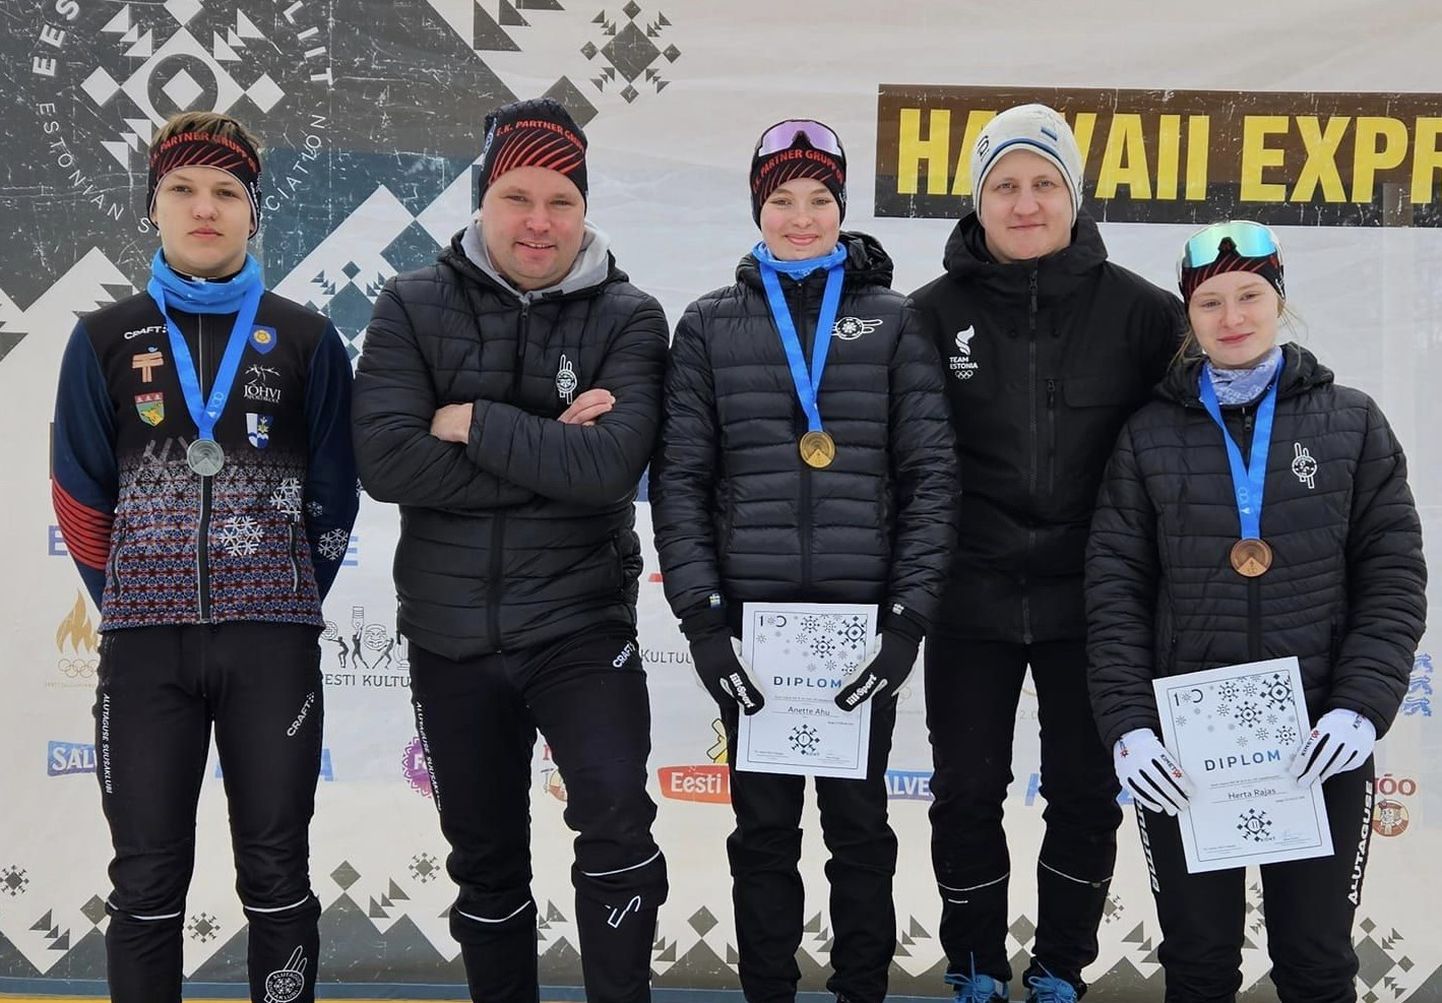 На пьедестале лыжного стадиона в Хаанья: завоевавший серебро в гонке с общего старта Андриас Ряэст, тренер Тимо Юурсалу, ставшая чемпионкой Анетте Аху, тренер Аво Самбла и занявшая третье место Херта Раяс.